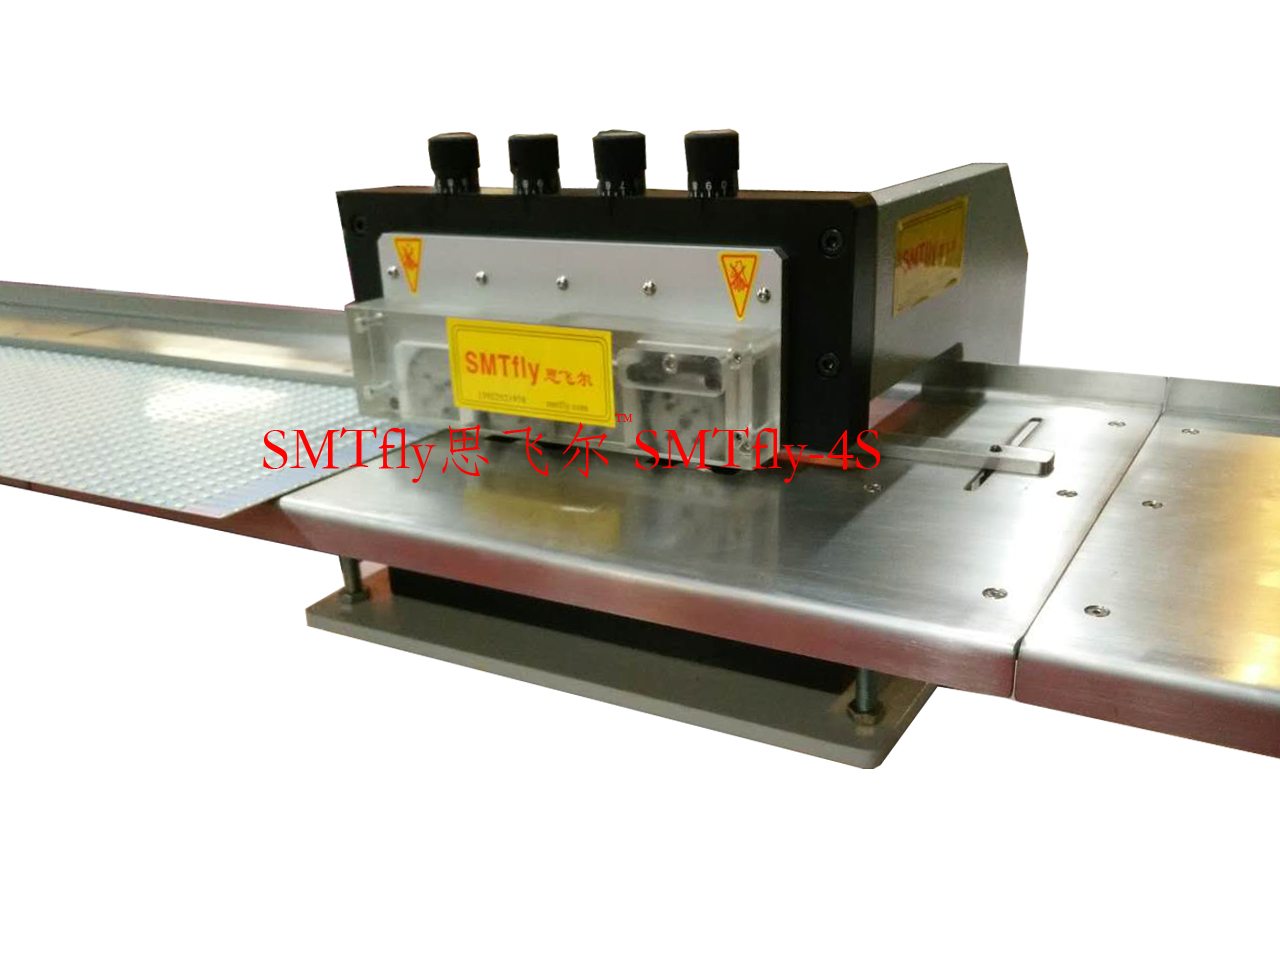 PCB Separator for LED lighting, SMTfly-4S